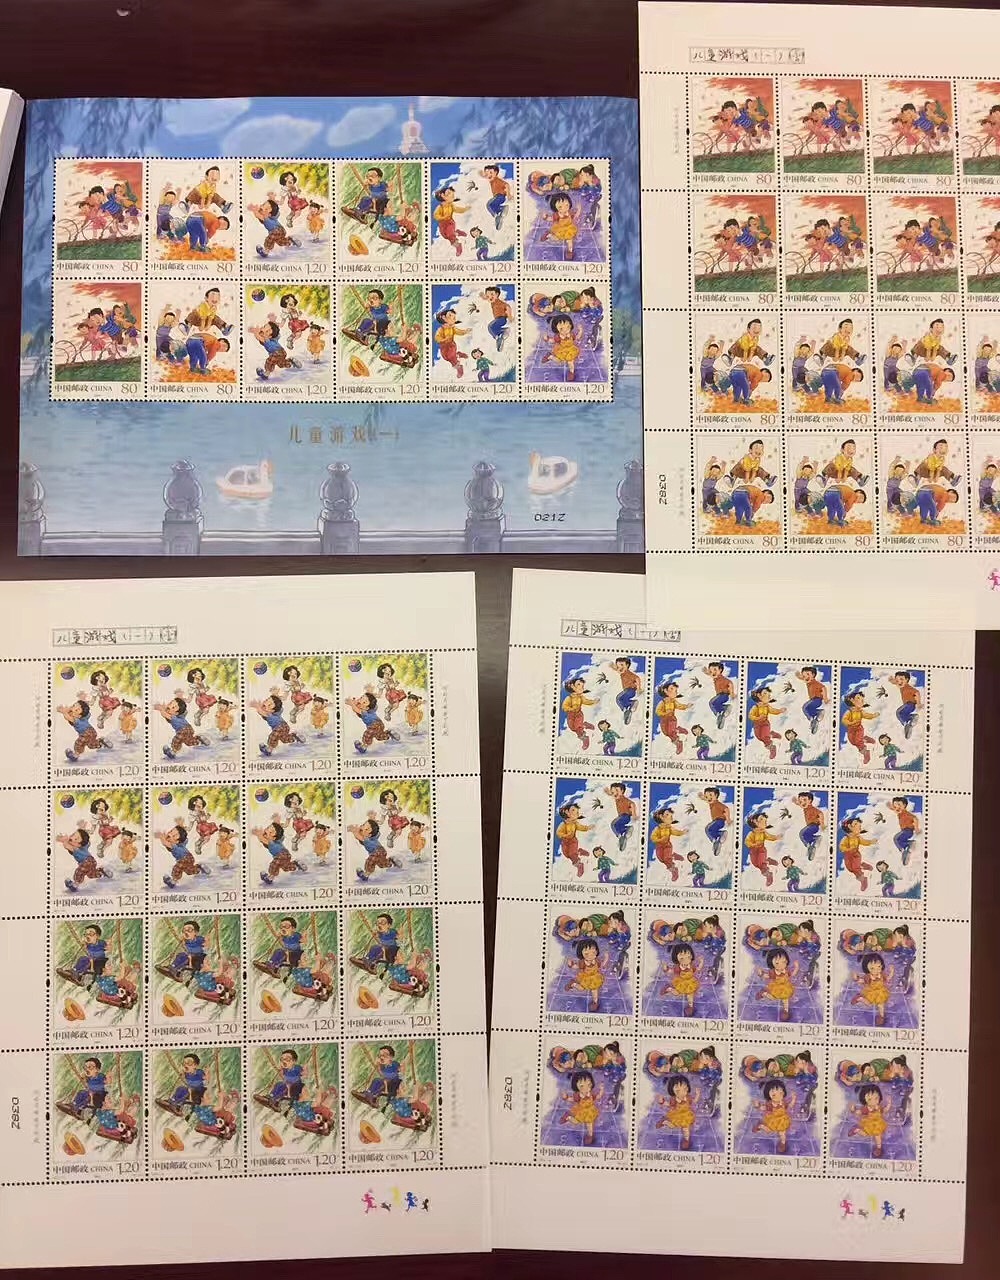 特种邮票《儿童游戏 第一辑》从设计到完成